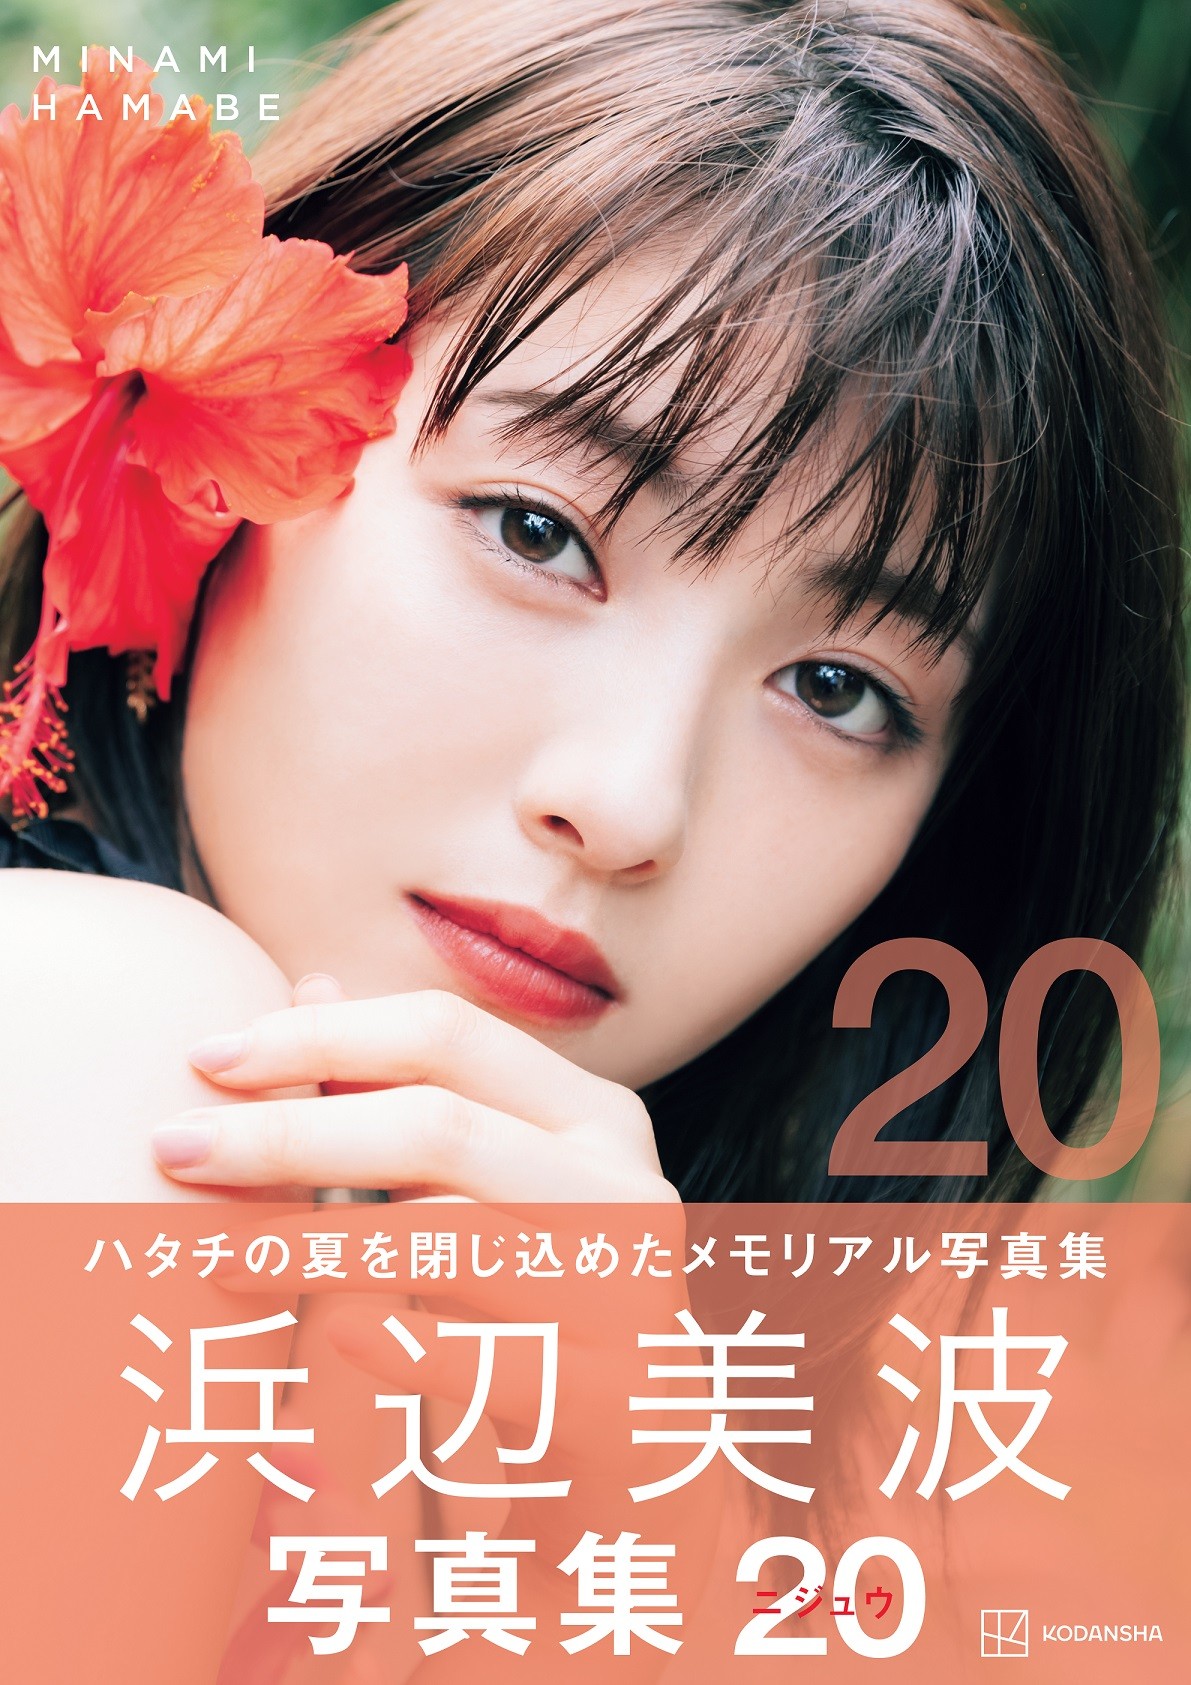 浜辺美波 写真集「20(ニジュウ) 」豪華版(2000部限定生産) - アイドル